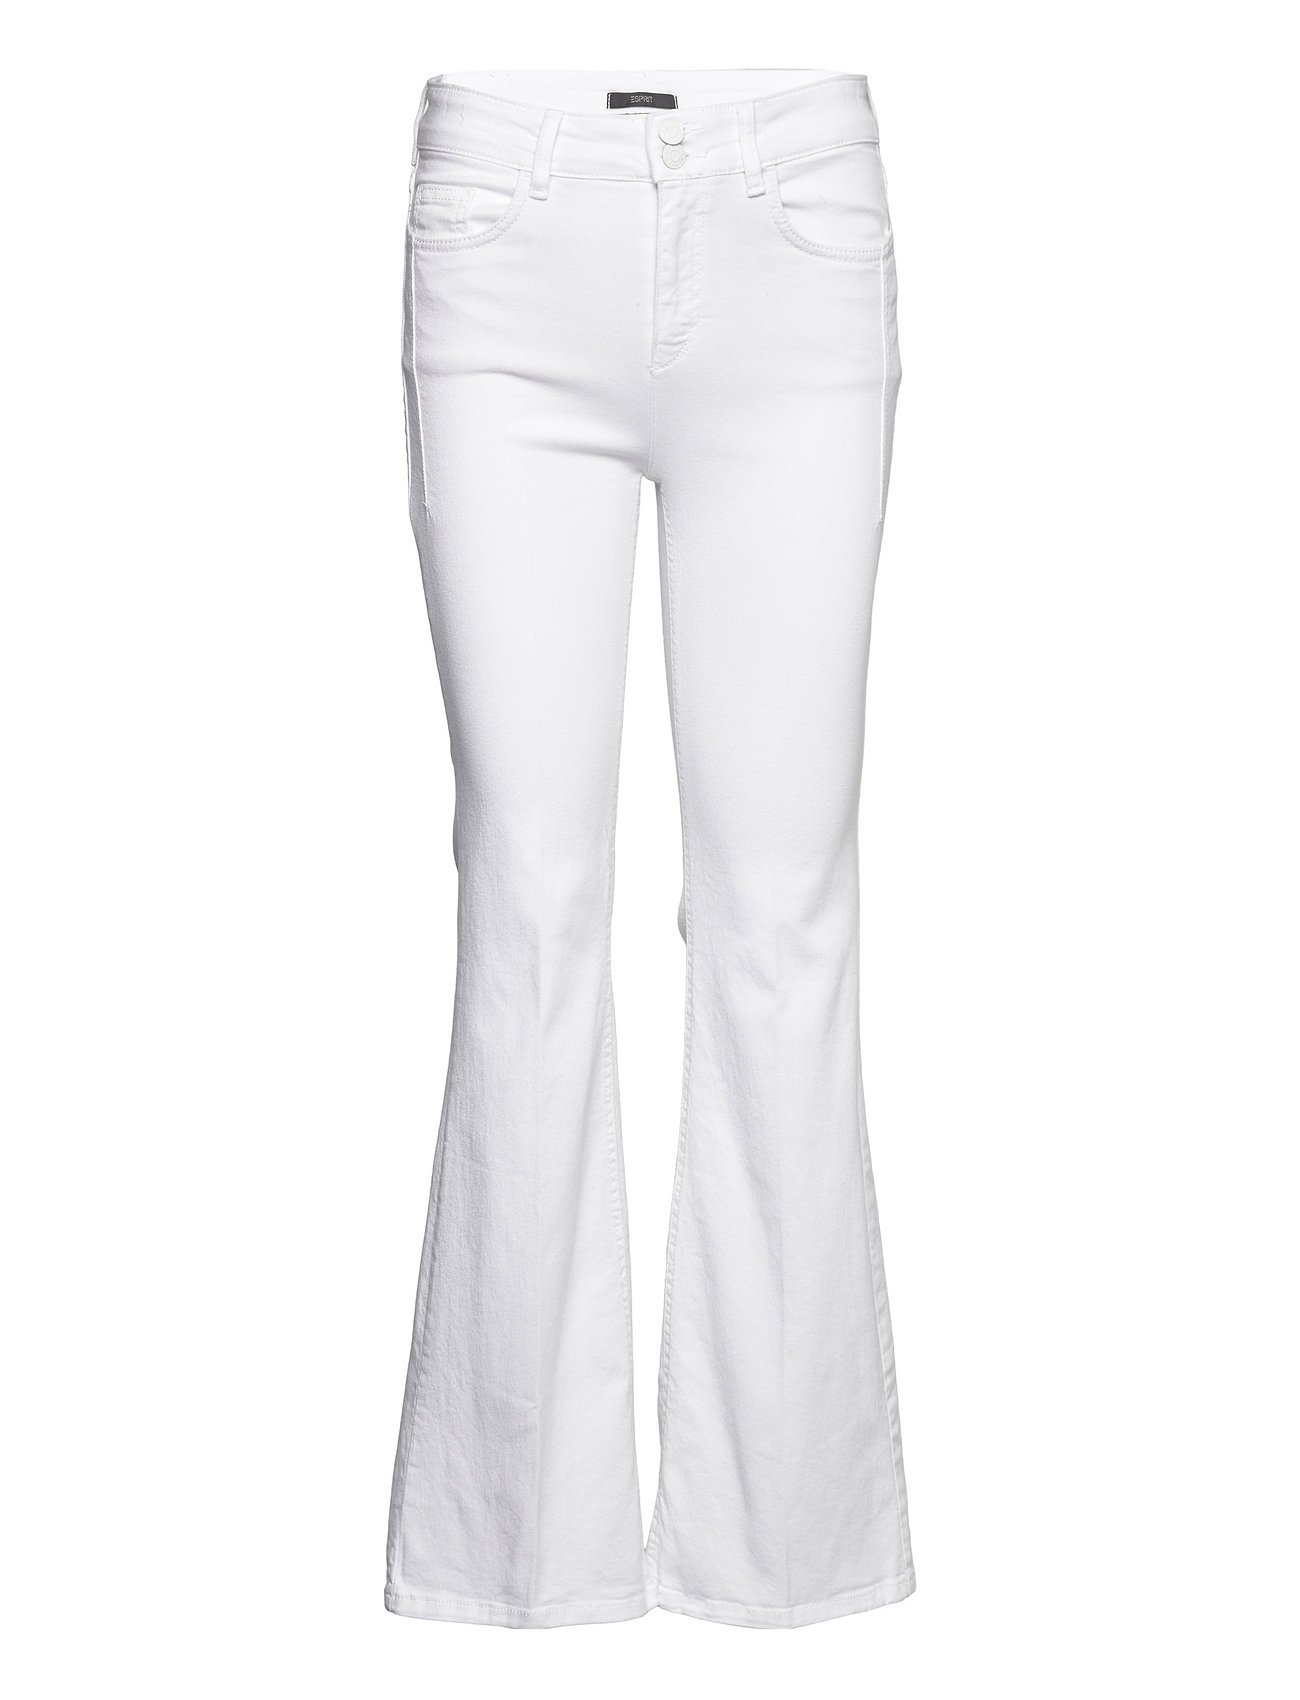 Esprit Collection Women Pants Denim Length Service - Boot Cut Jeans -